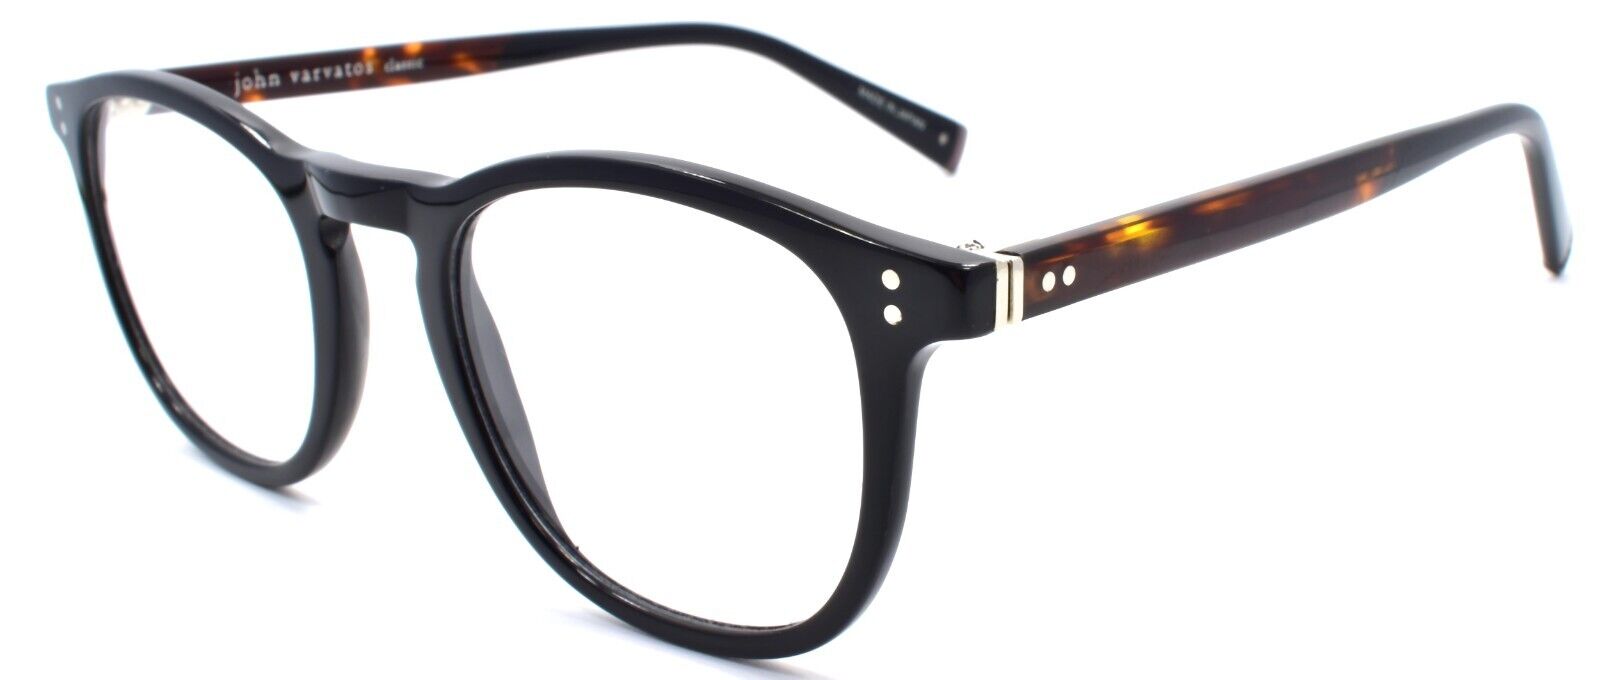 1-John Varvatos V376 Men's Eyeglasses Frames 48-21-145 Black Japan-751286310429-IKSpecs